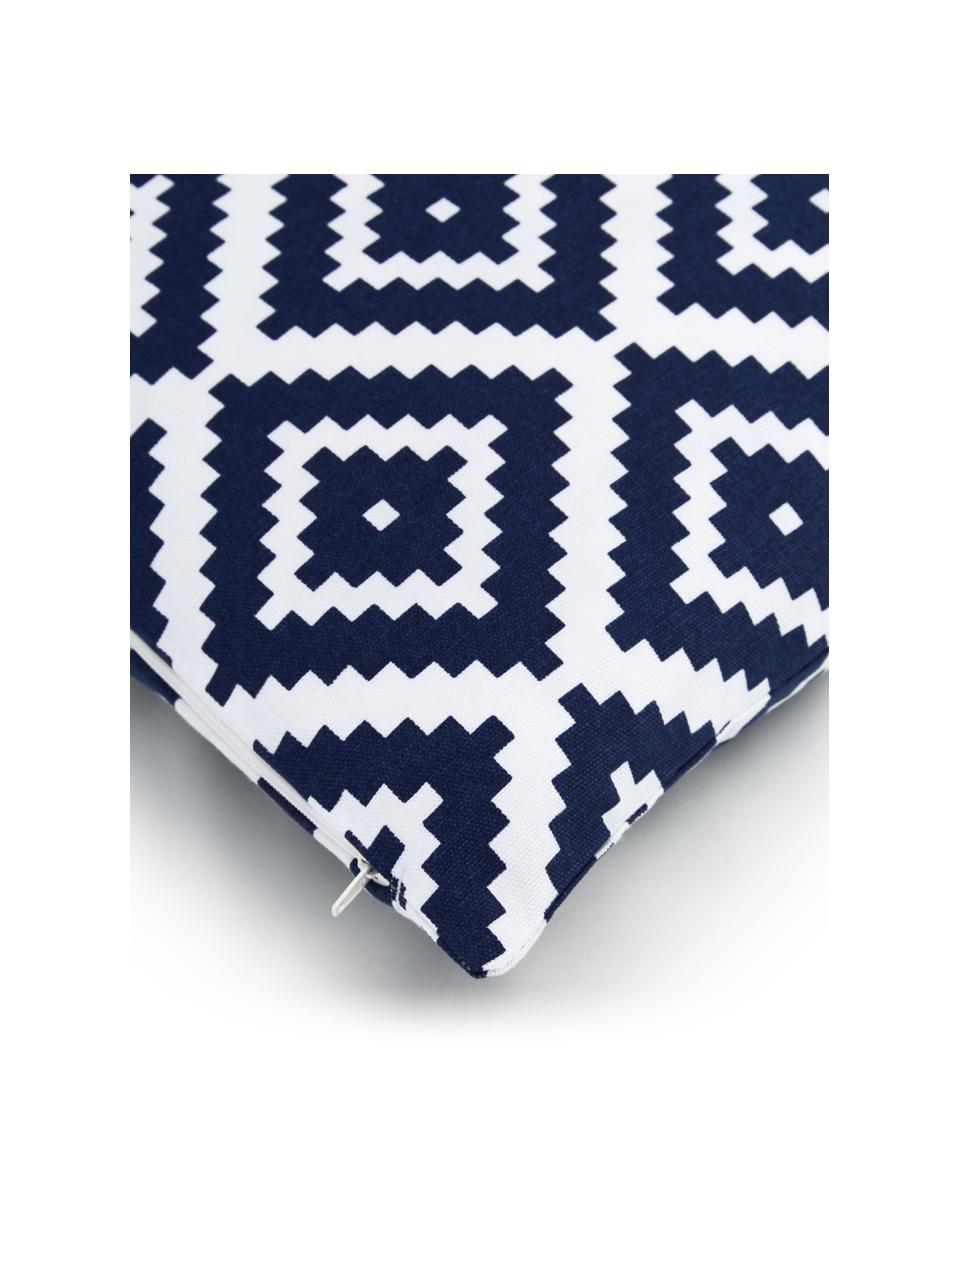 Kussenhoes Miami met grafisch patroon, 100% katoen, Donkerblauw, wit, B 45 x L 45 cm